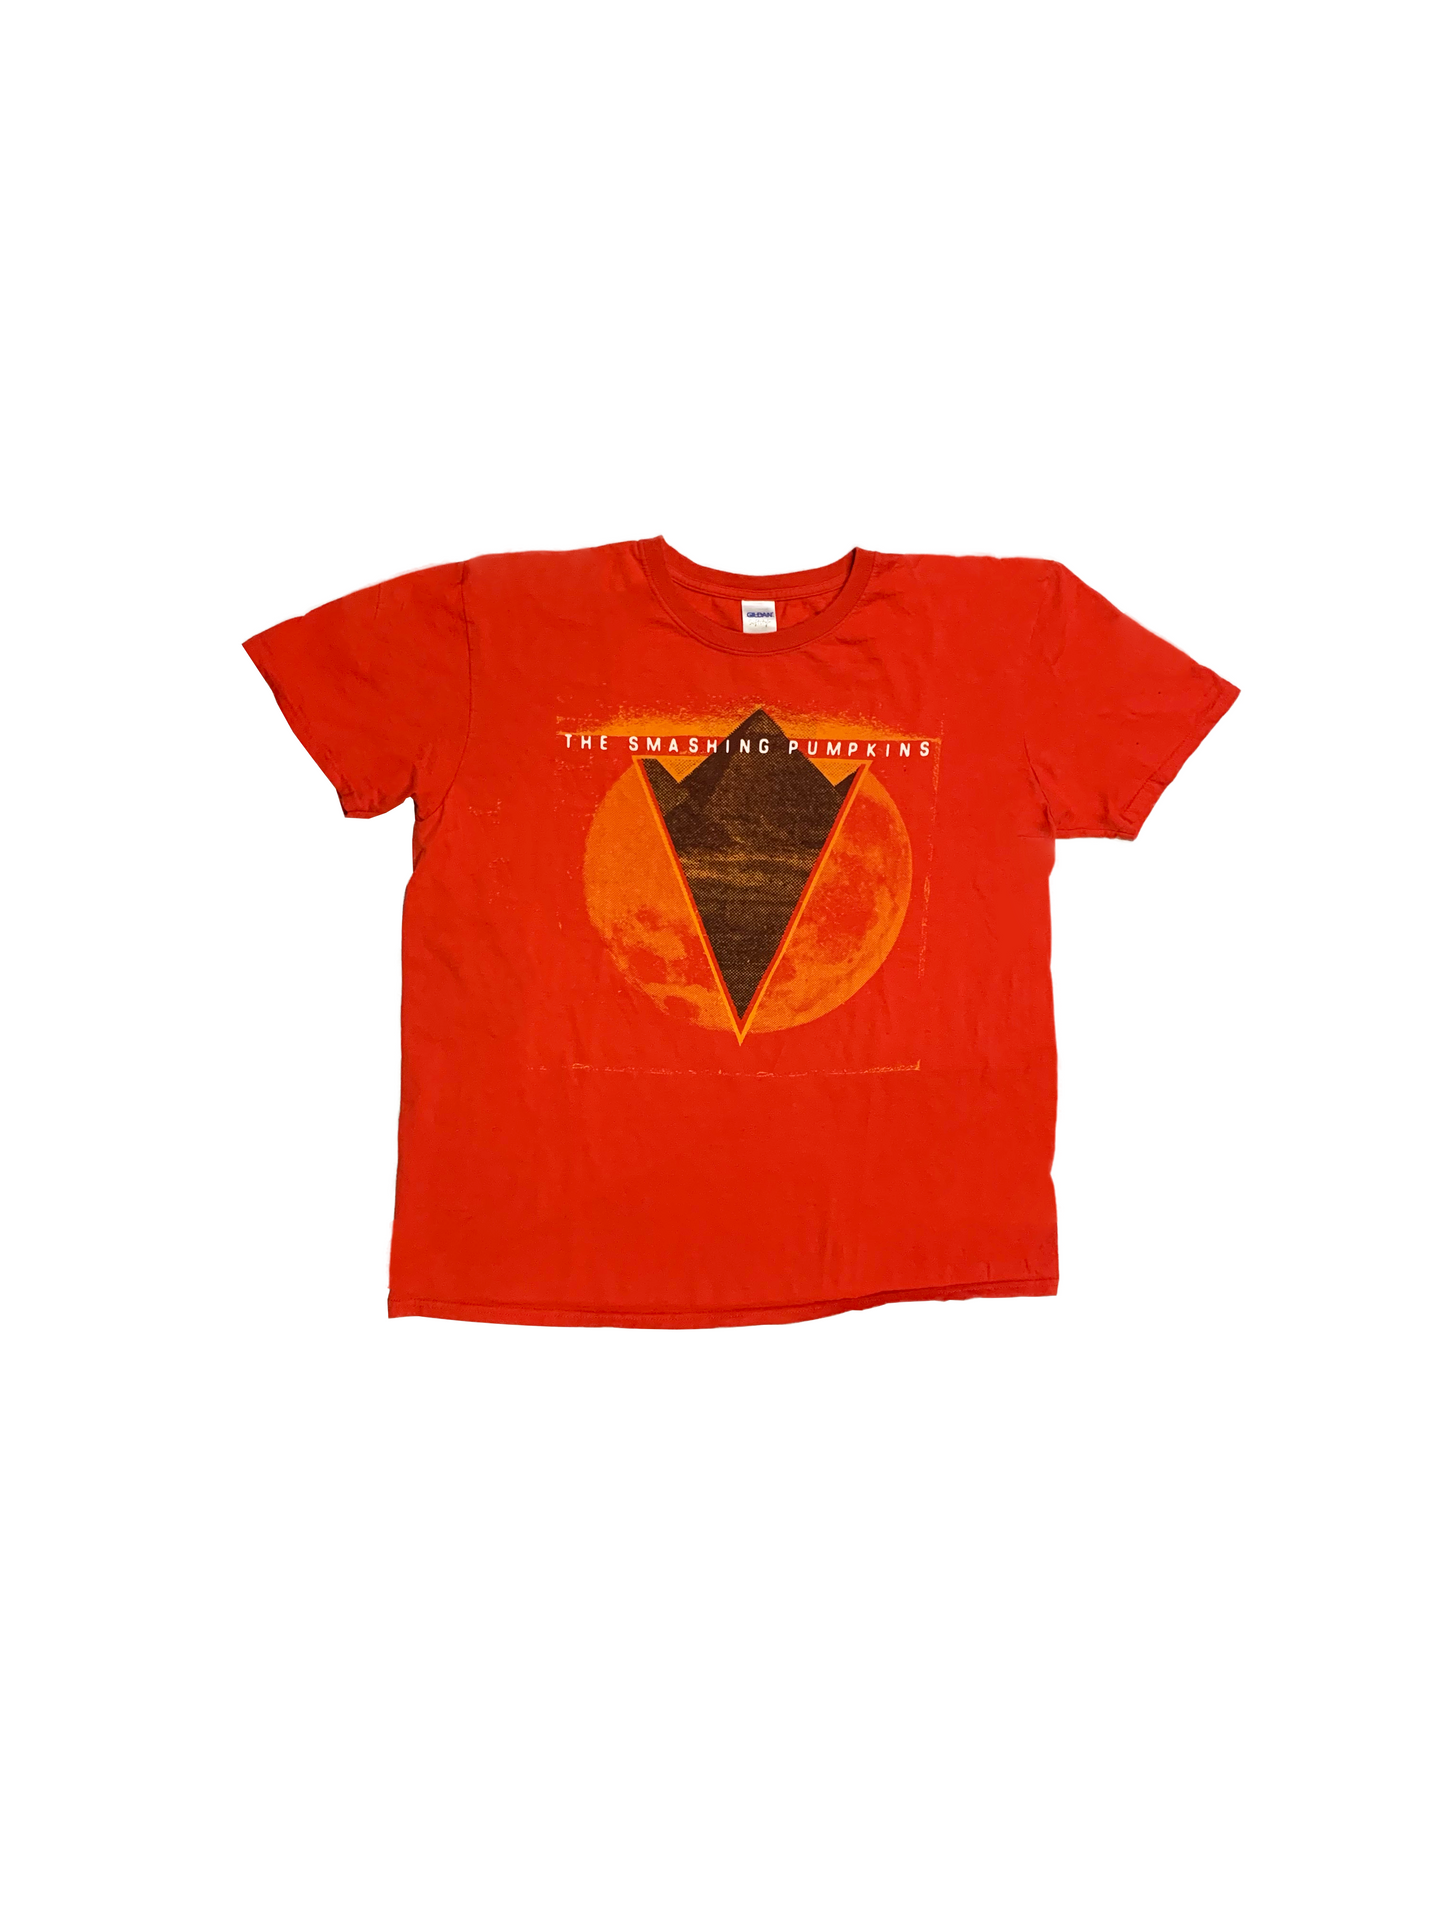 The Smashing Pumpkin T-Shirt